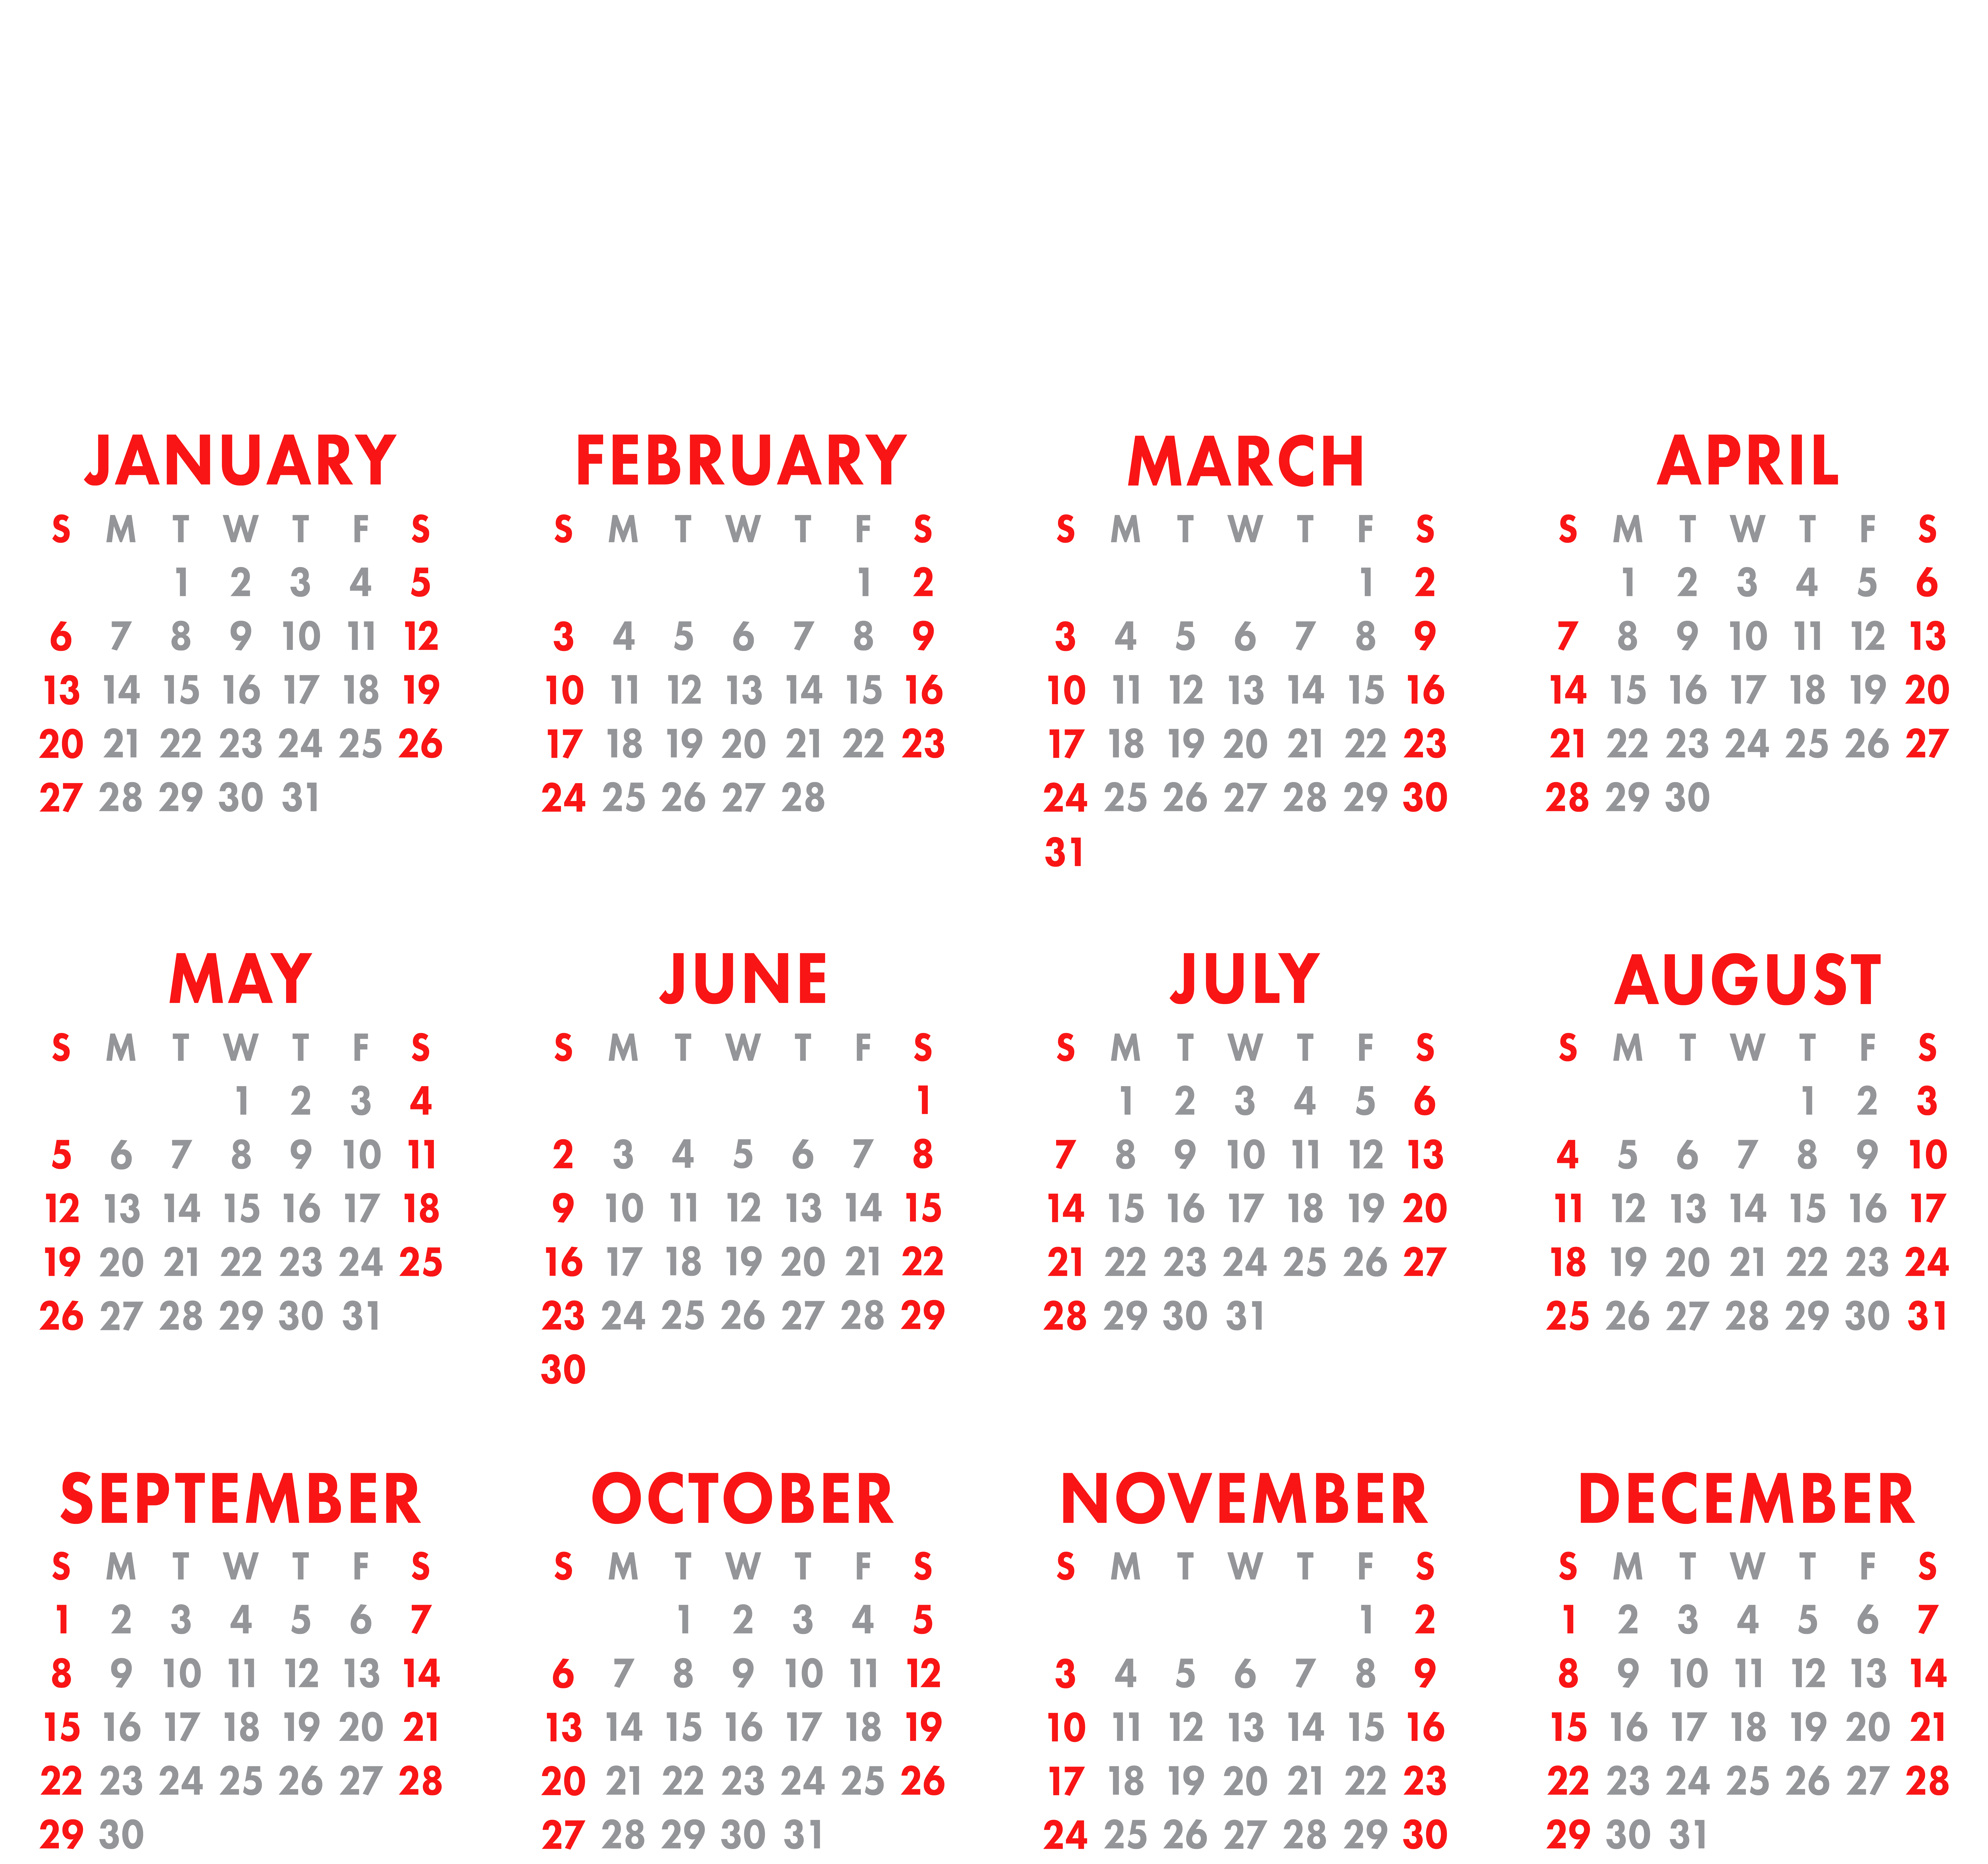 2019 Calendar Transparent PNG Image.